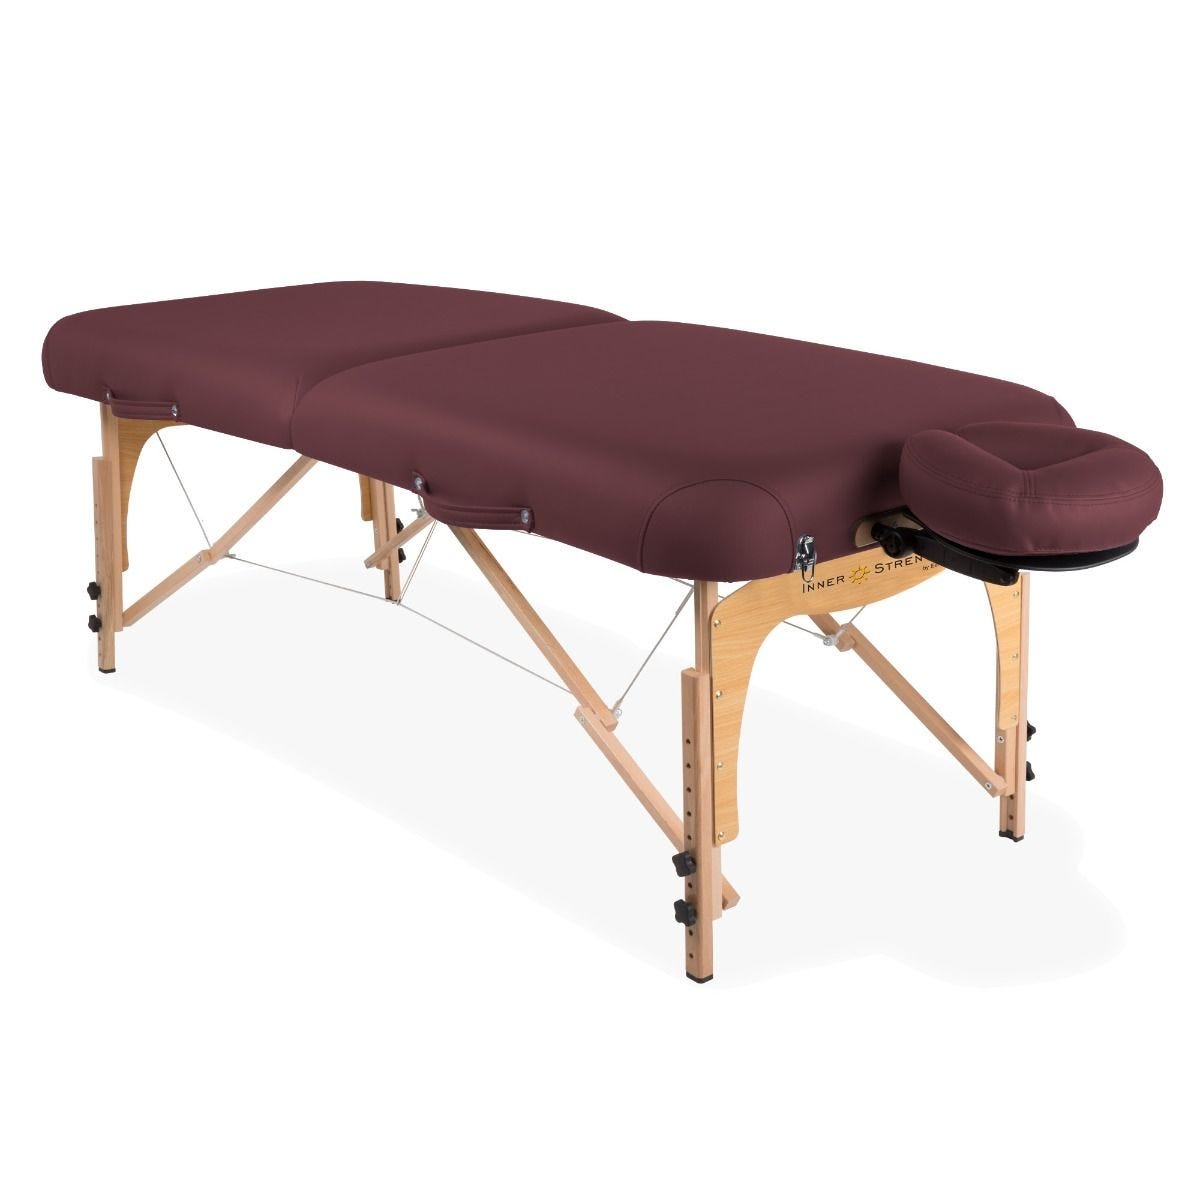 EarthLite Inner Strengh E2 Portable Massage Table Package